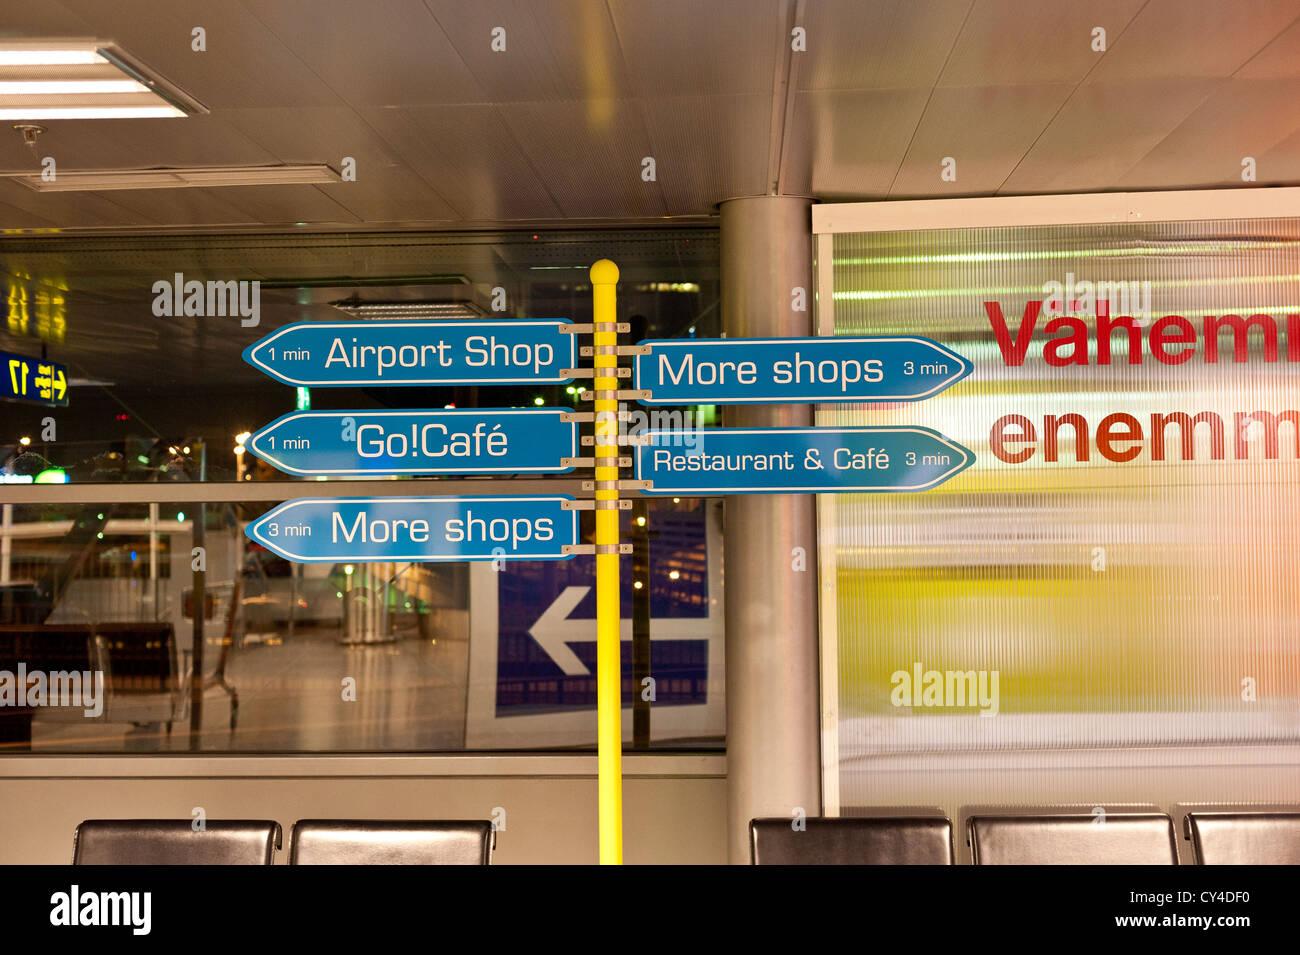 Zeichen in einem Flughafen Regie Passagiere zu Geschäften, Cafés und restaurants Stockfoto